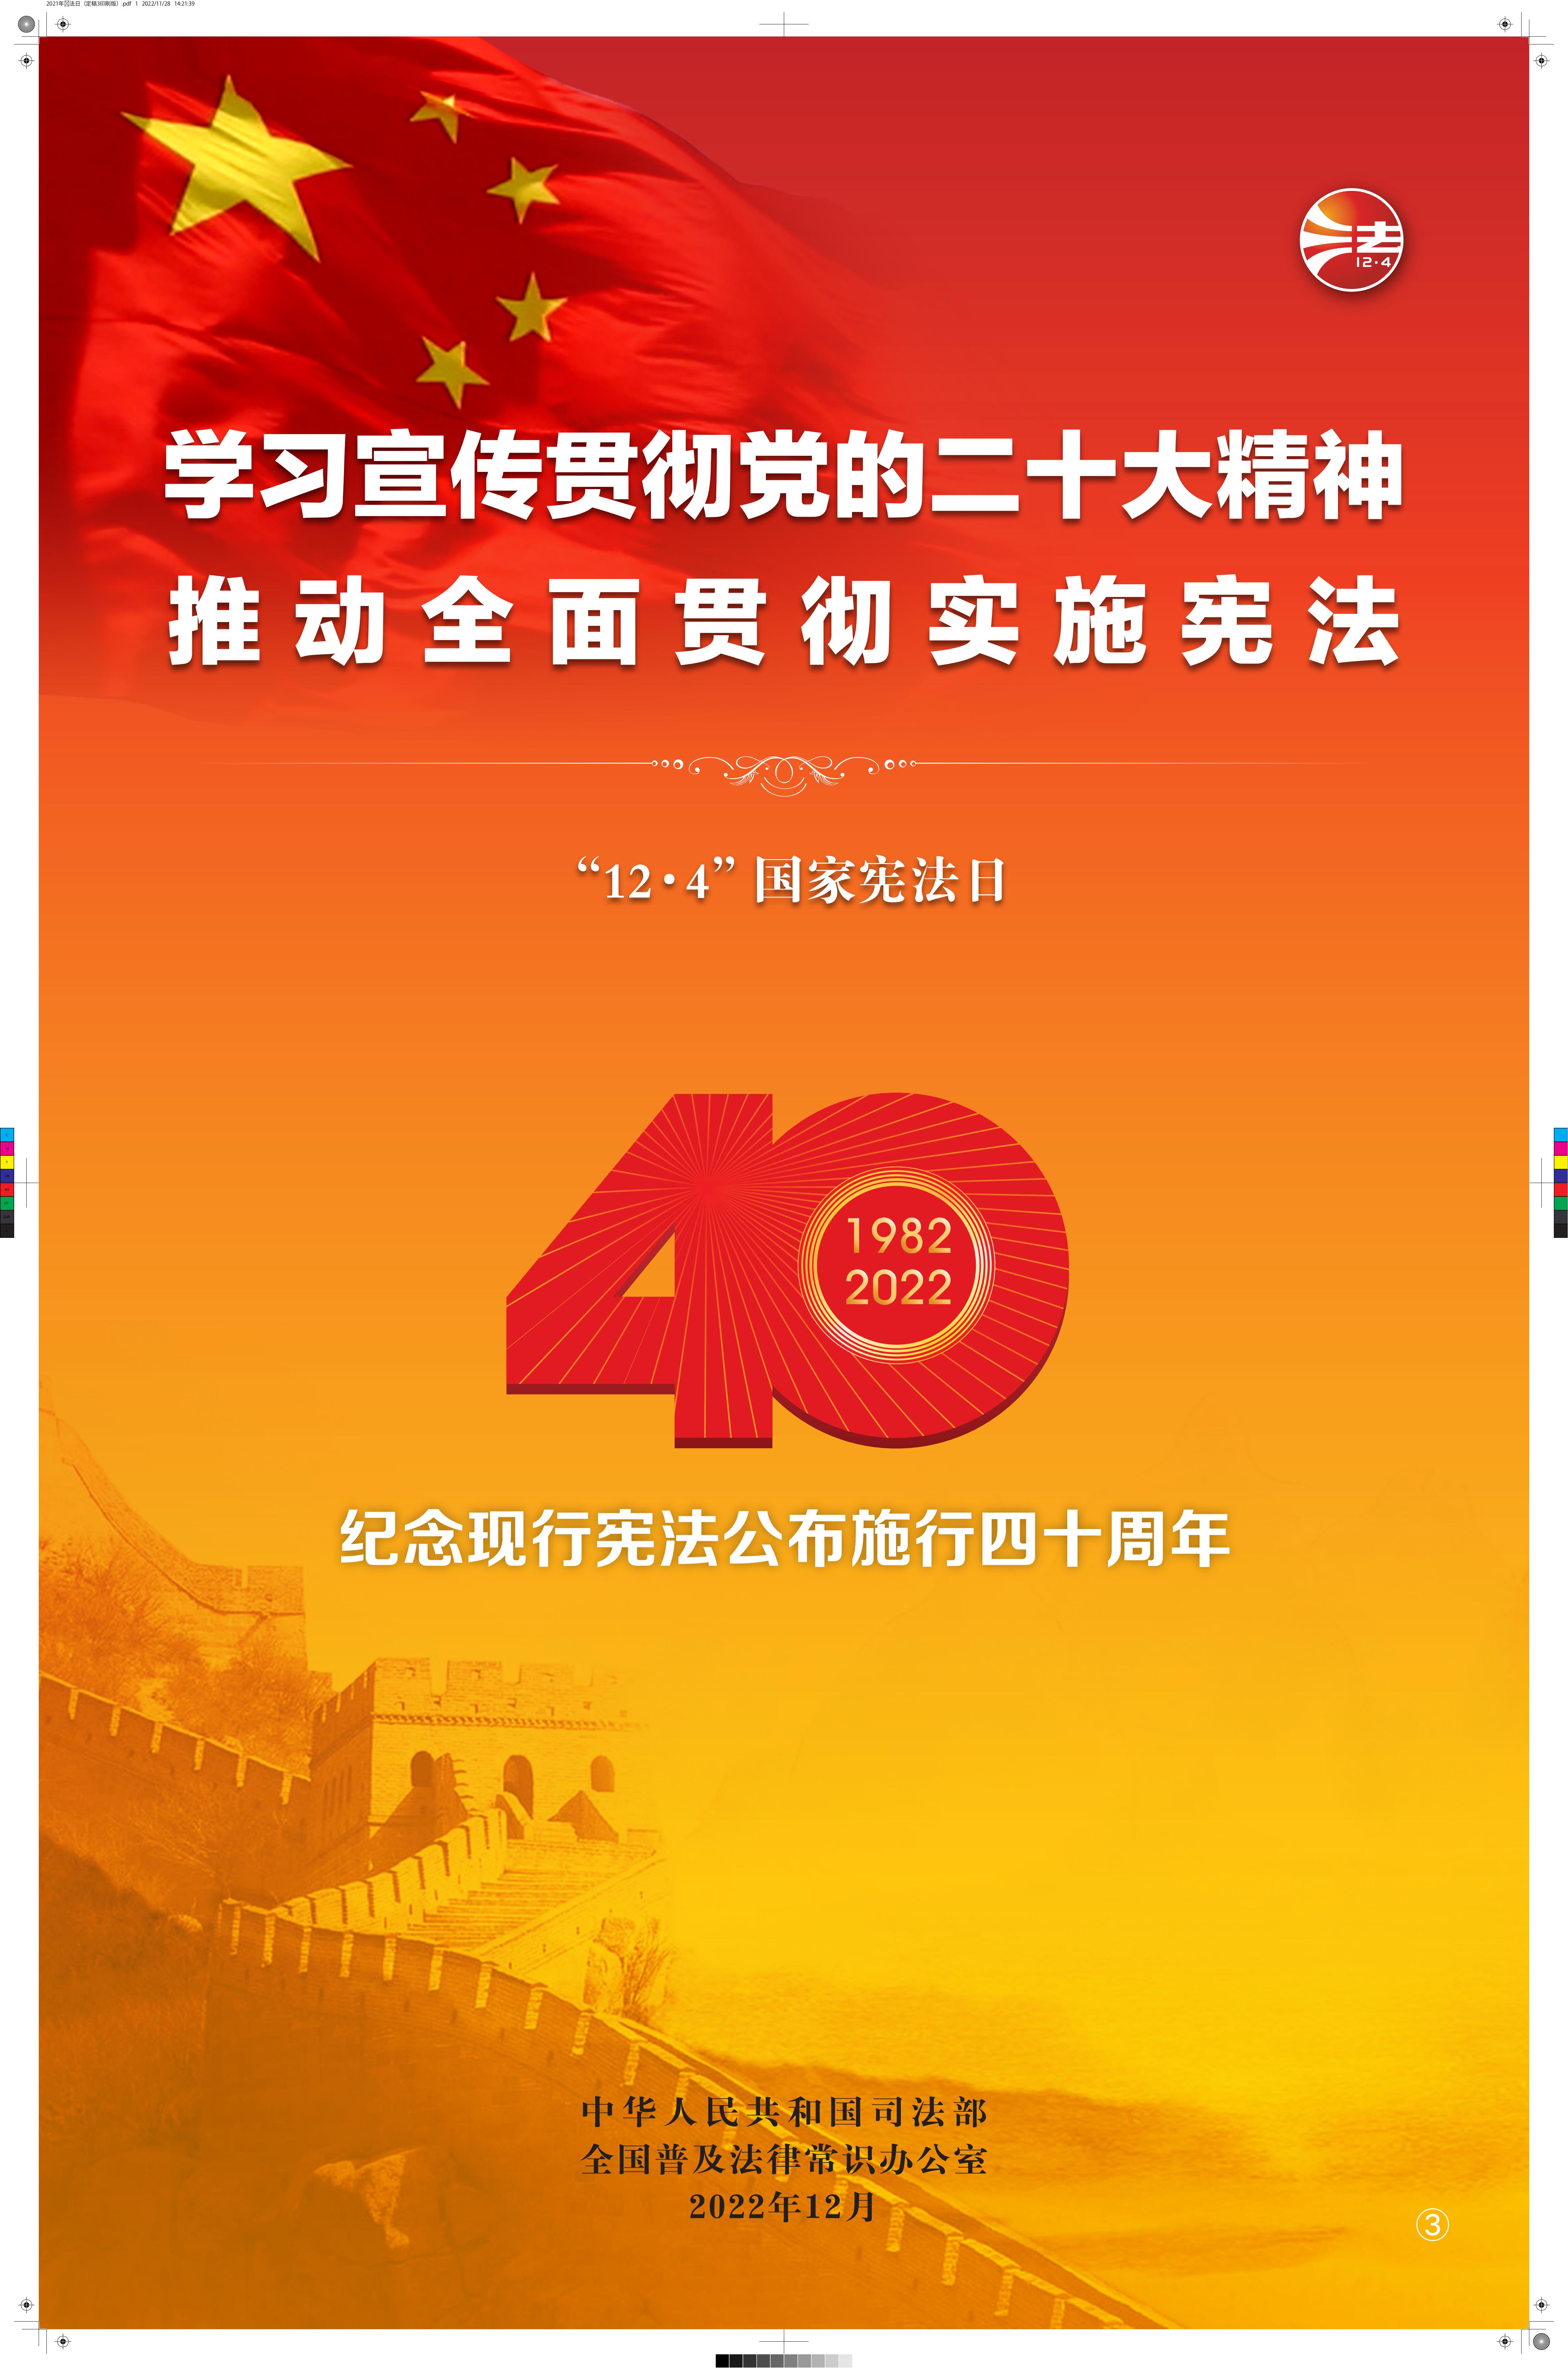 中国普法网宣传周海报1_00(1).jpg